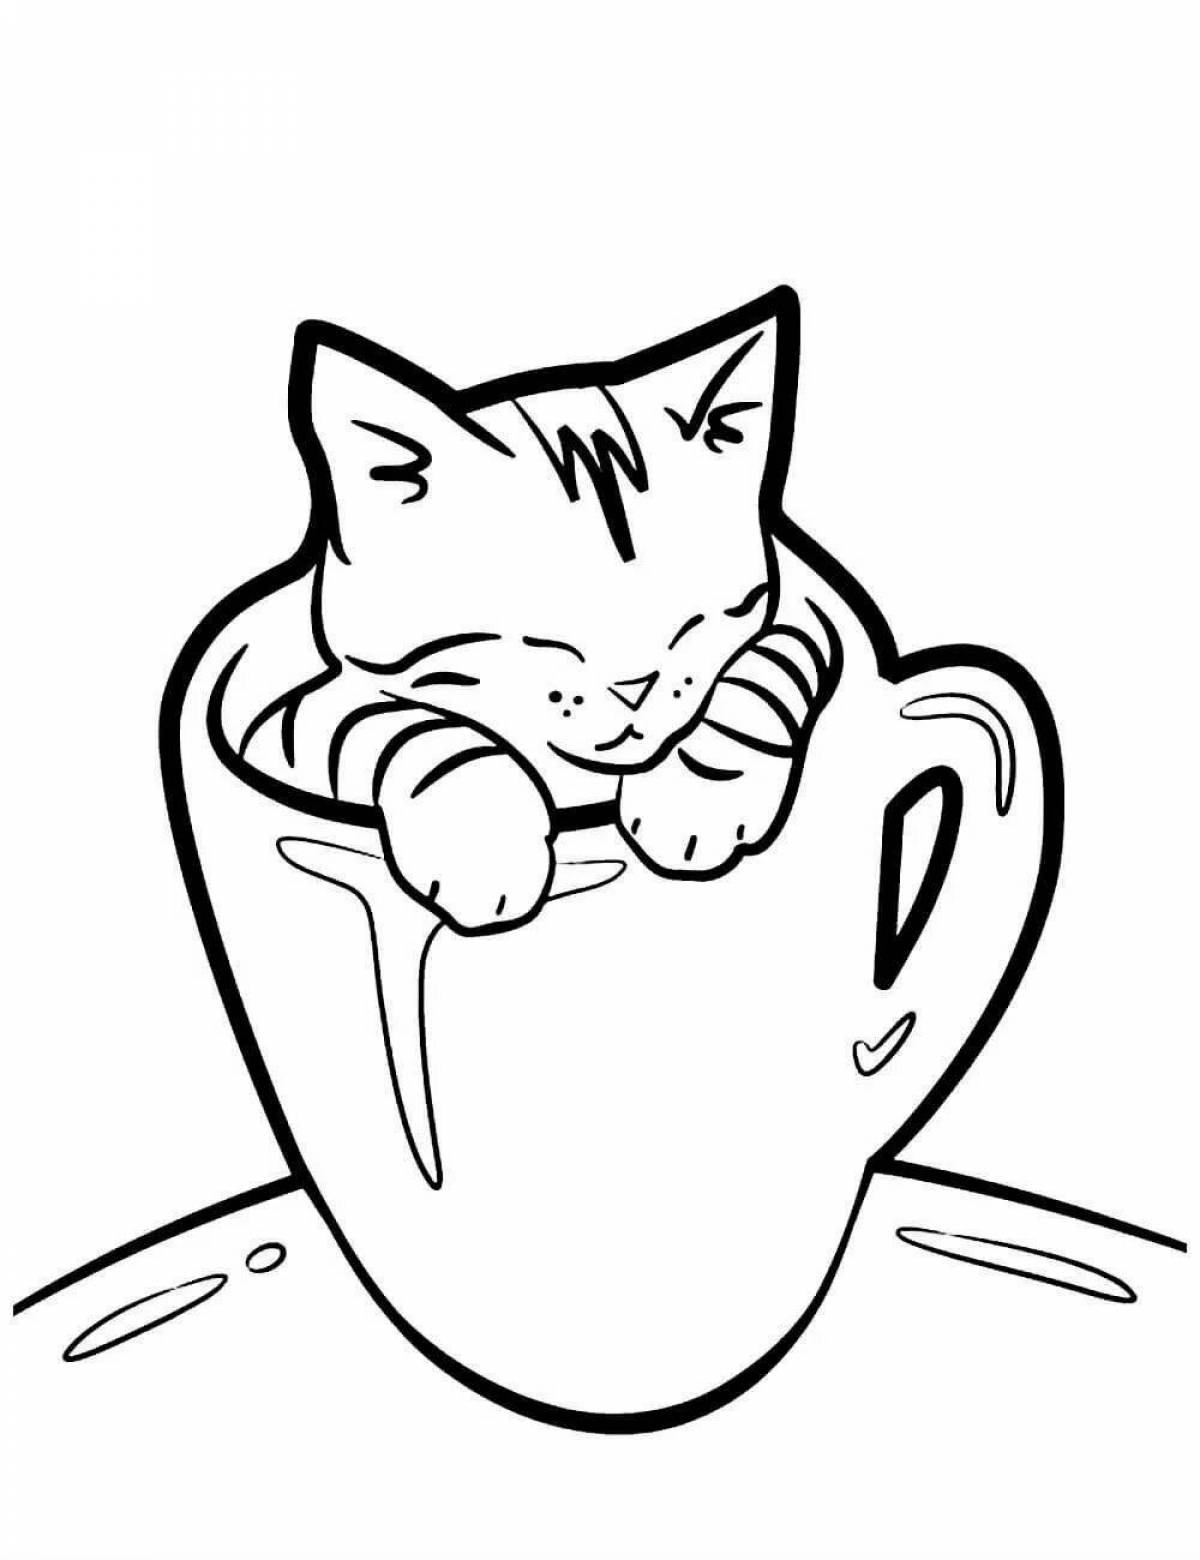 Kitten in a cup #1